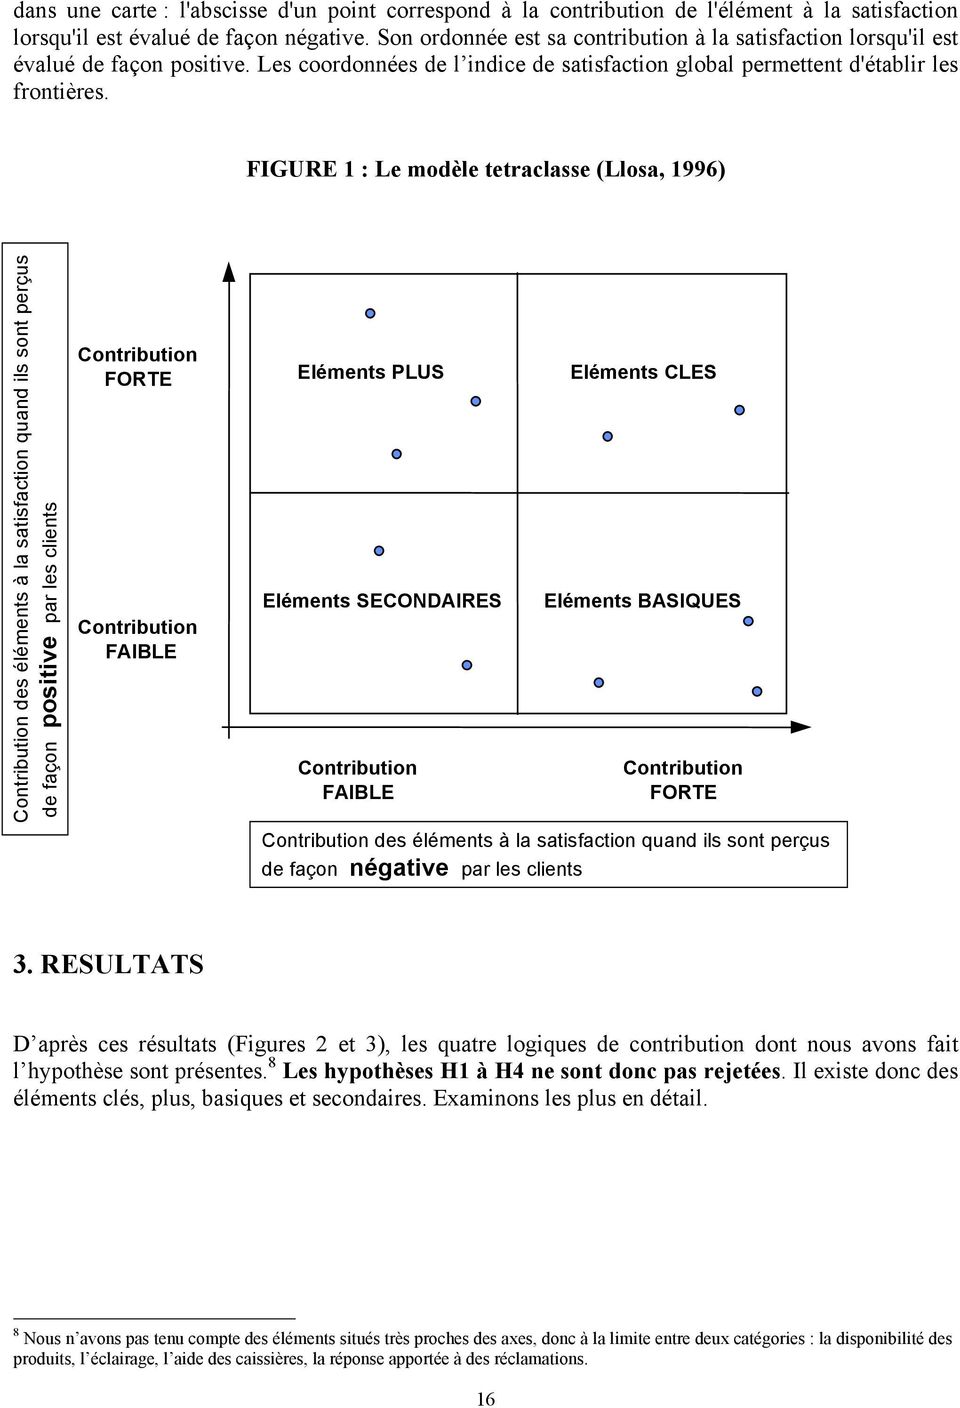 FIGURE 1 : Le modèle tetraclasse (Llosa, 1996) Contribution des éléments à la satisfaction quand ils sont perçus de façon positive par les clients Contribution FORTE Contribution FAIBLE Eléments PLUS